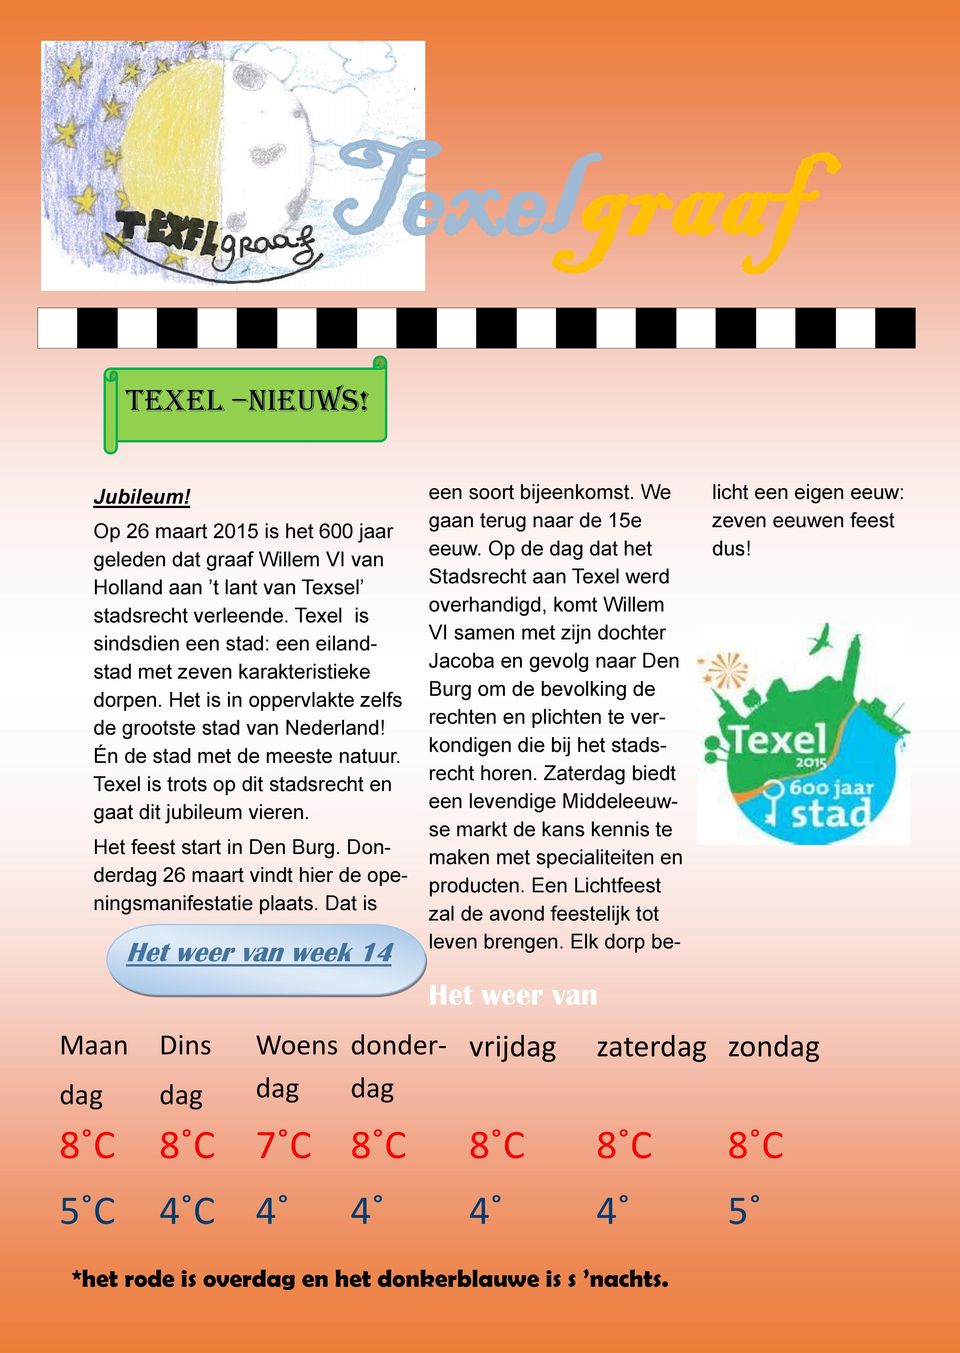 Texel is trots op dit stadsrecht en gaat dit jubileum vieren. Het feest start in Den Burg. Donderdag 26 maart vindt hier de openingsmanifestatie plaats.